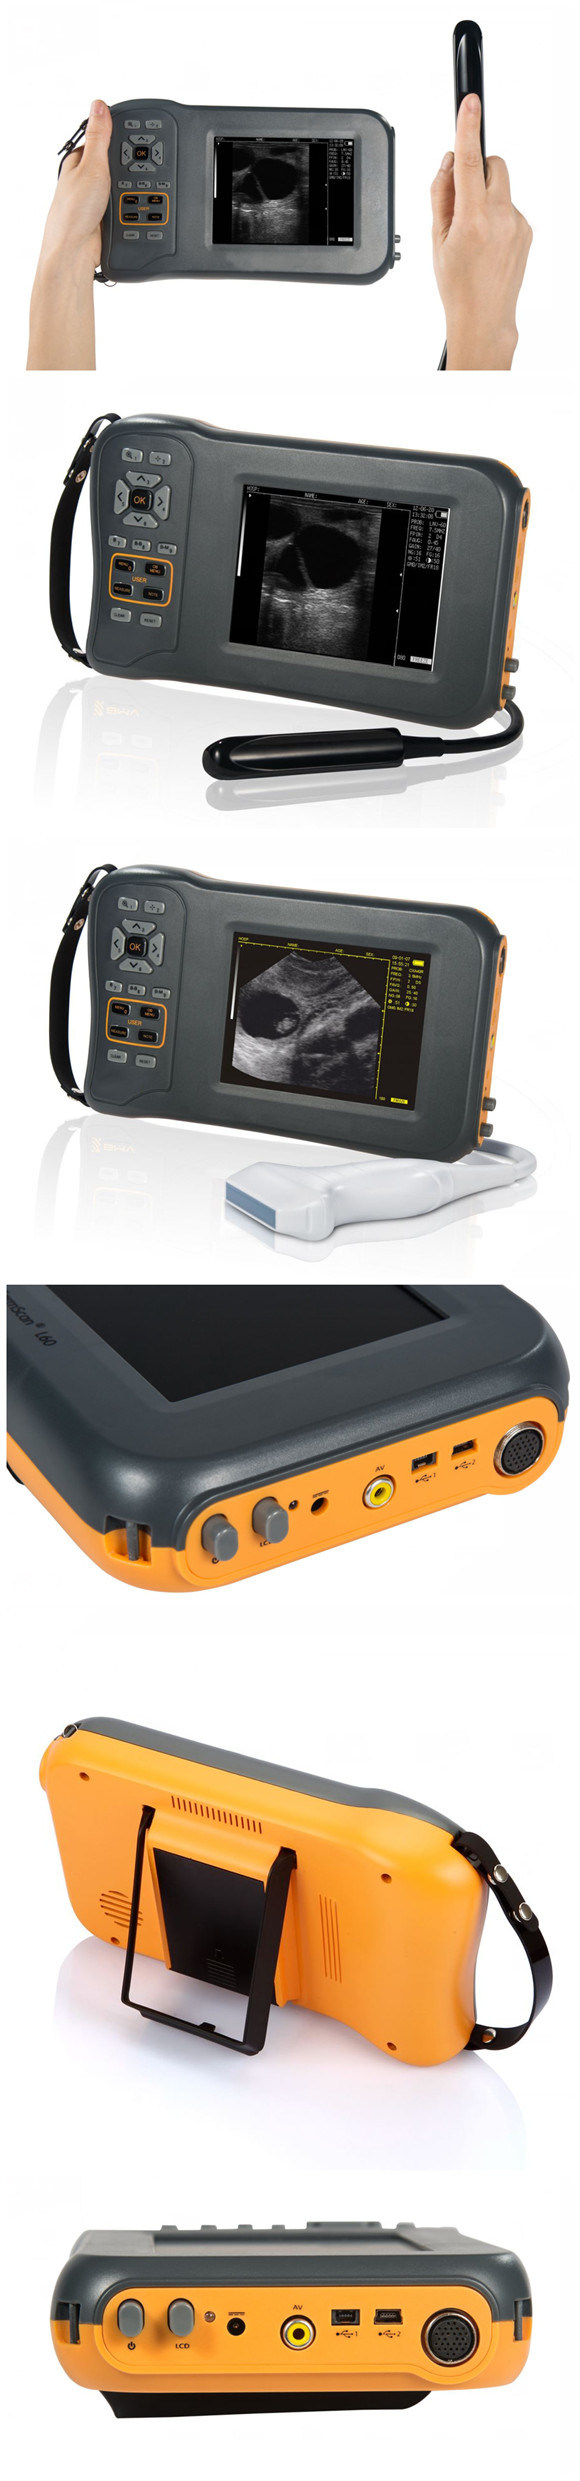 Medical Equipment Portable Handhelld Pet Veterinary Ultrasound Scanner/Machine for Vet